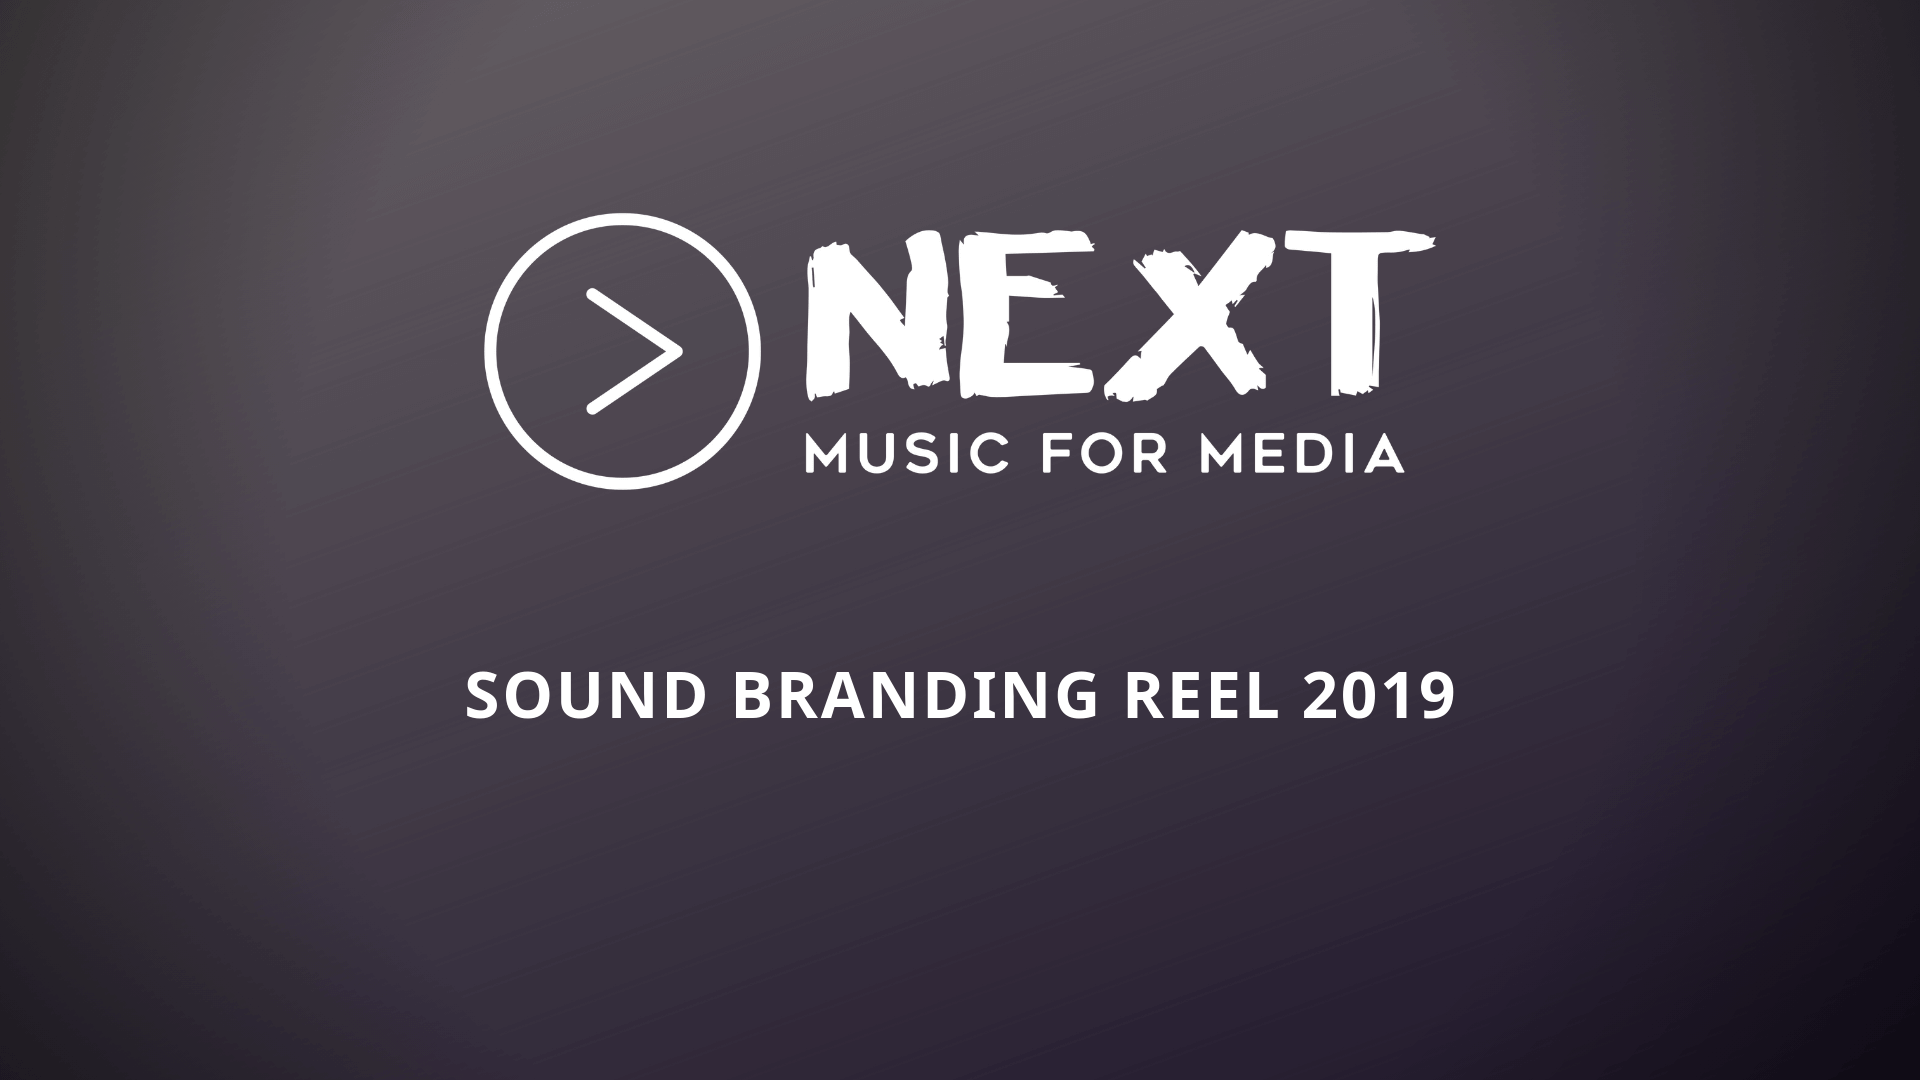 Sound Branding Reel